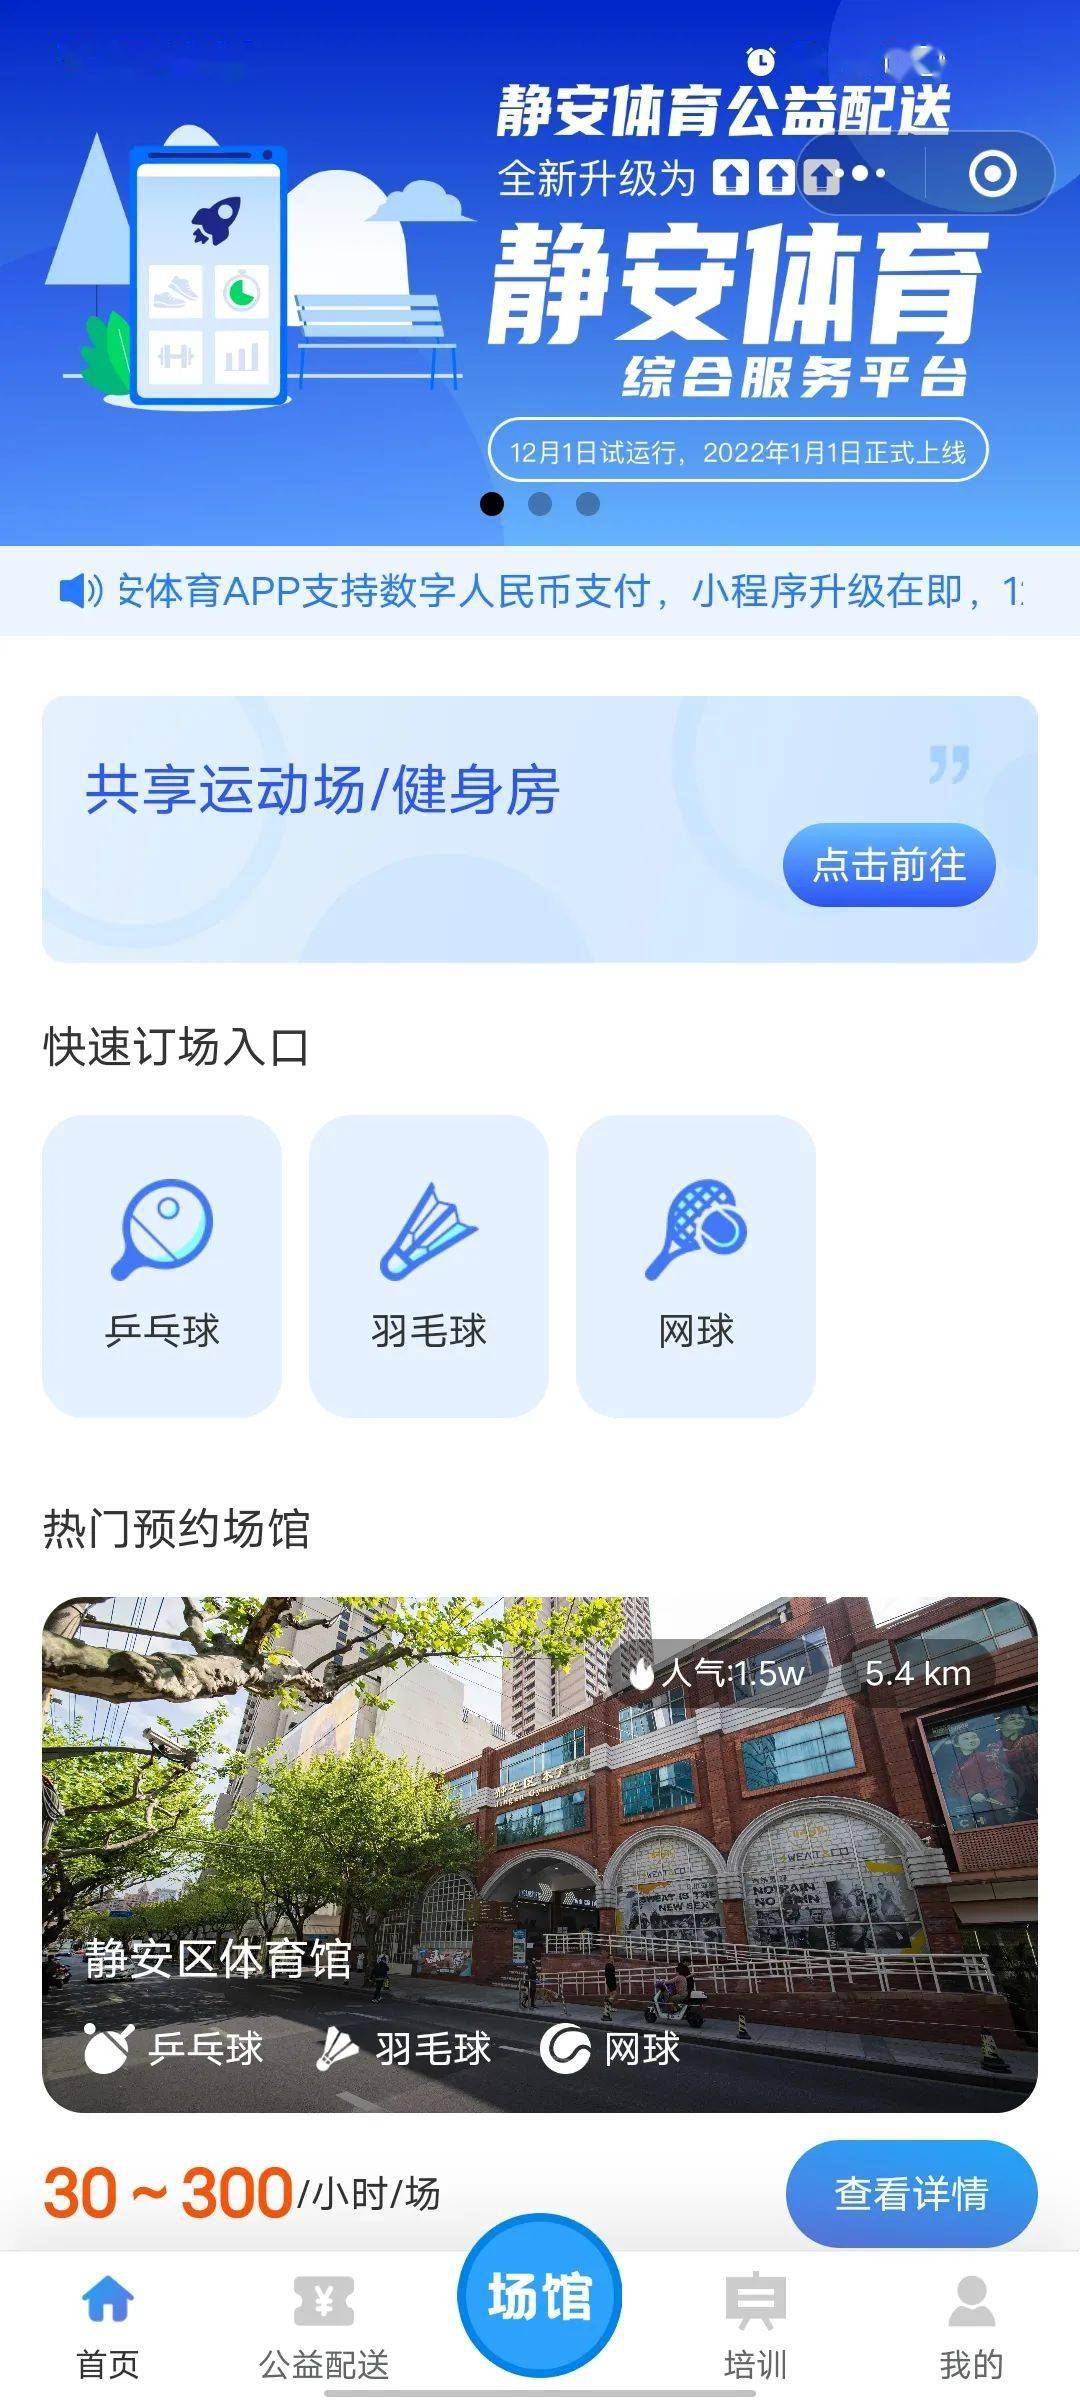 雷火竞技金沙9001登录app下载